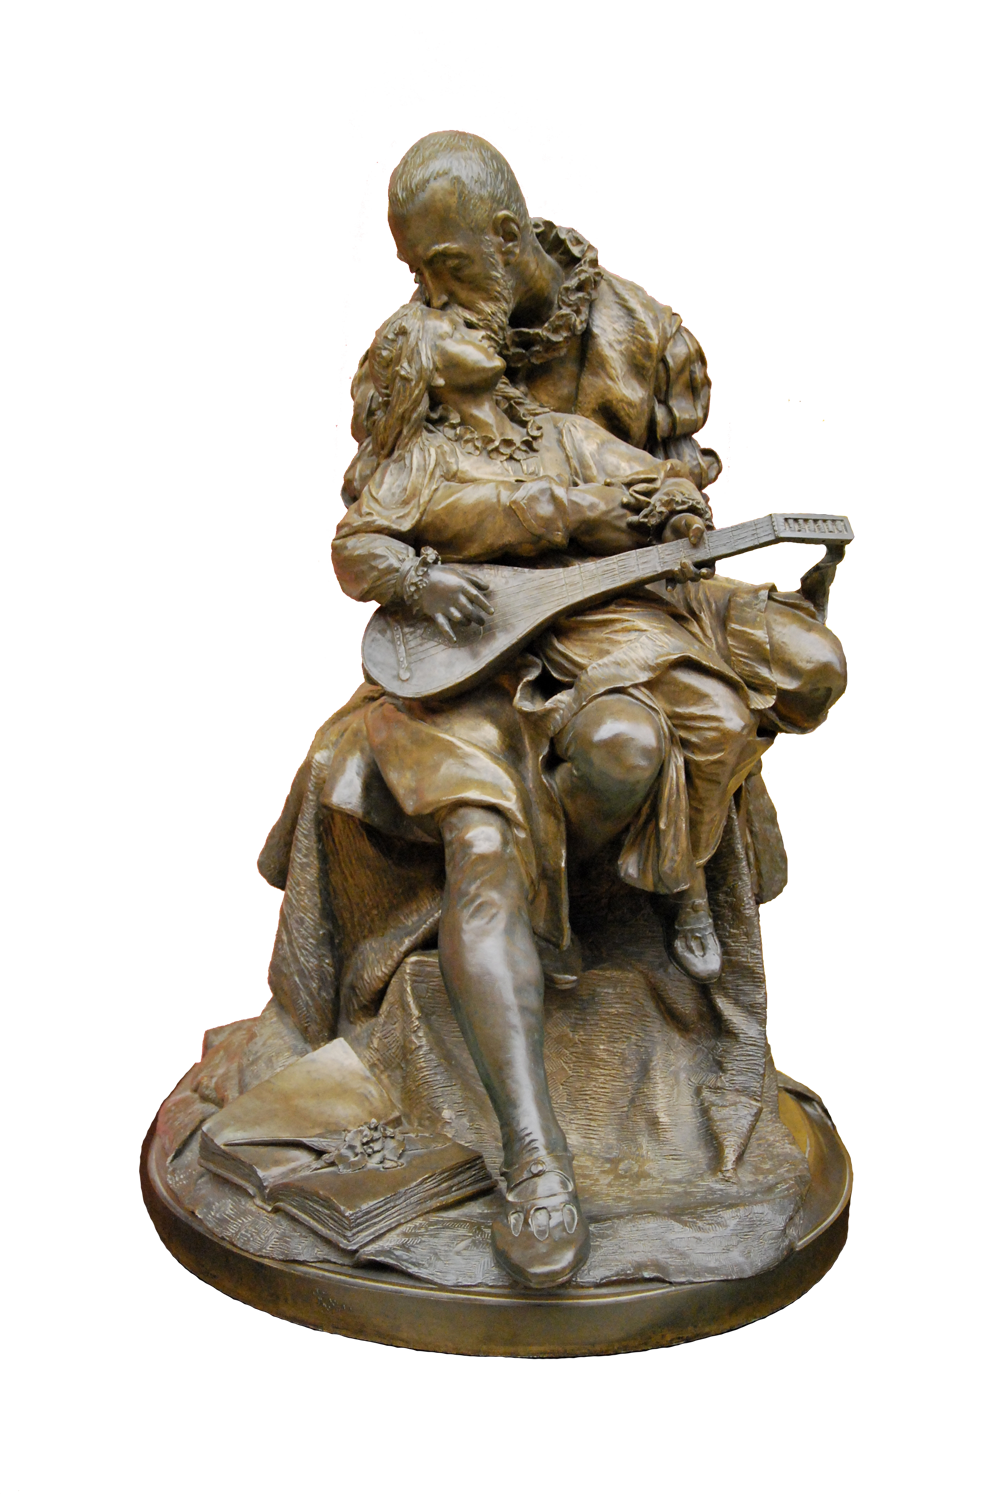 Rzeźba przedstawia siedzącego mężczyznę o krótko przystrzyżonych włosach, wąsach i brodzie, ubranego w sięgający kolan płaszcz z ozdobnymi, bufiastymi rękawami, spod którego wystaje kryza, obcisłe spodnie i trzewiki. Na jego kolanach znajduje się dziewczynka ubrana w sukienkę i pantofelki. W rączkach trzyma lutnię. Dziecko wygląda jakby spało. Mężczyzna całuje je w czoło. Na ziemi, obok prawej stopy mężczyzny leży otwarta księga.